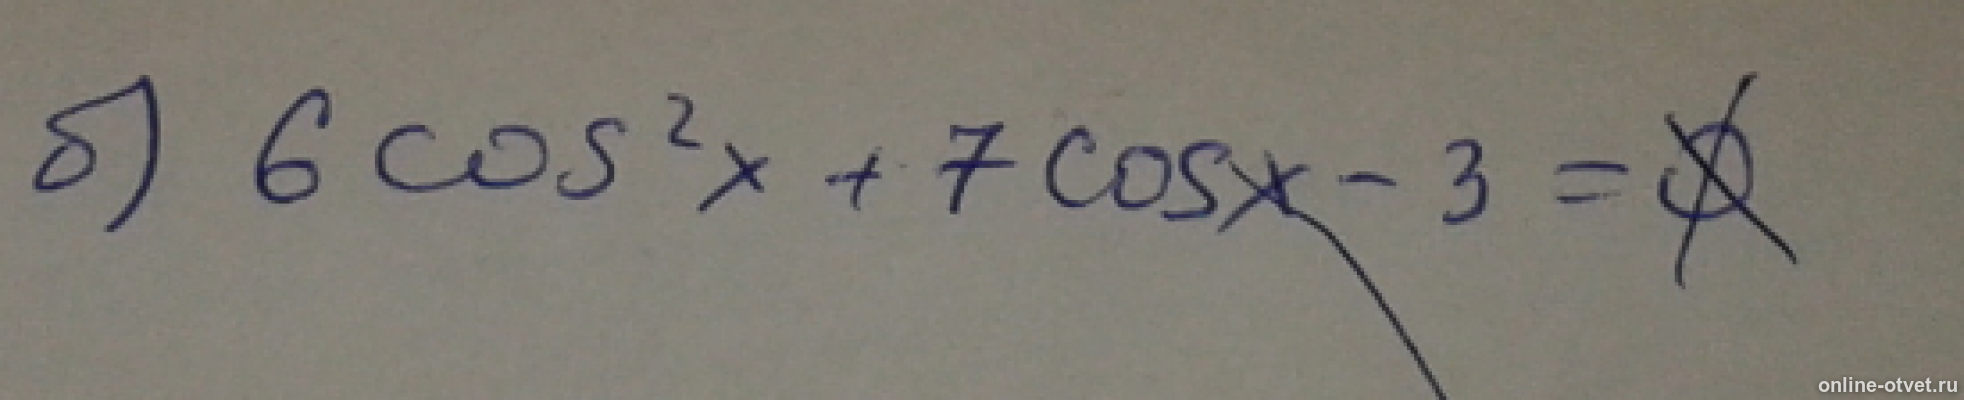 (Cos𝑥)2+7cos𝑥+6=0. 6cos2x+7cosx-3=0. 6cos2x-cosx-2 корень -sinx. -6cos x = cos x 7 3 2.